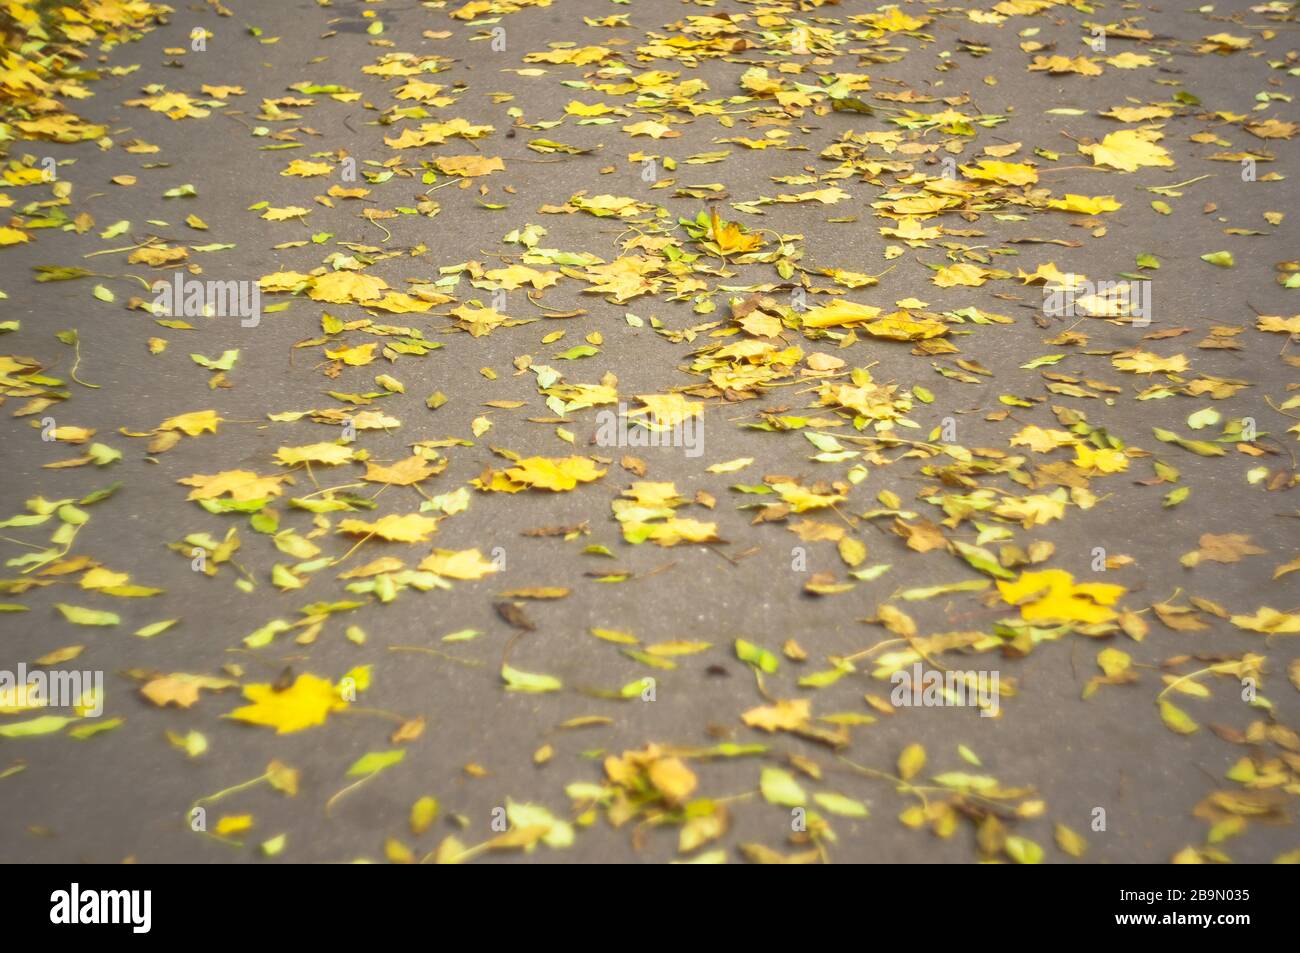 Autumn leaves on asphalt. Soft focus, defocused. Stock Photo